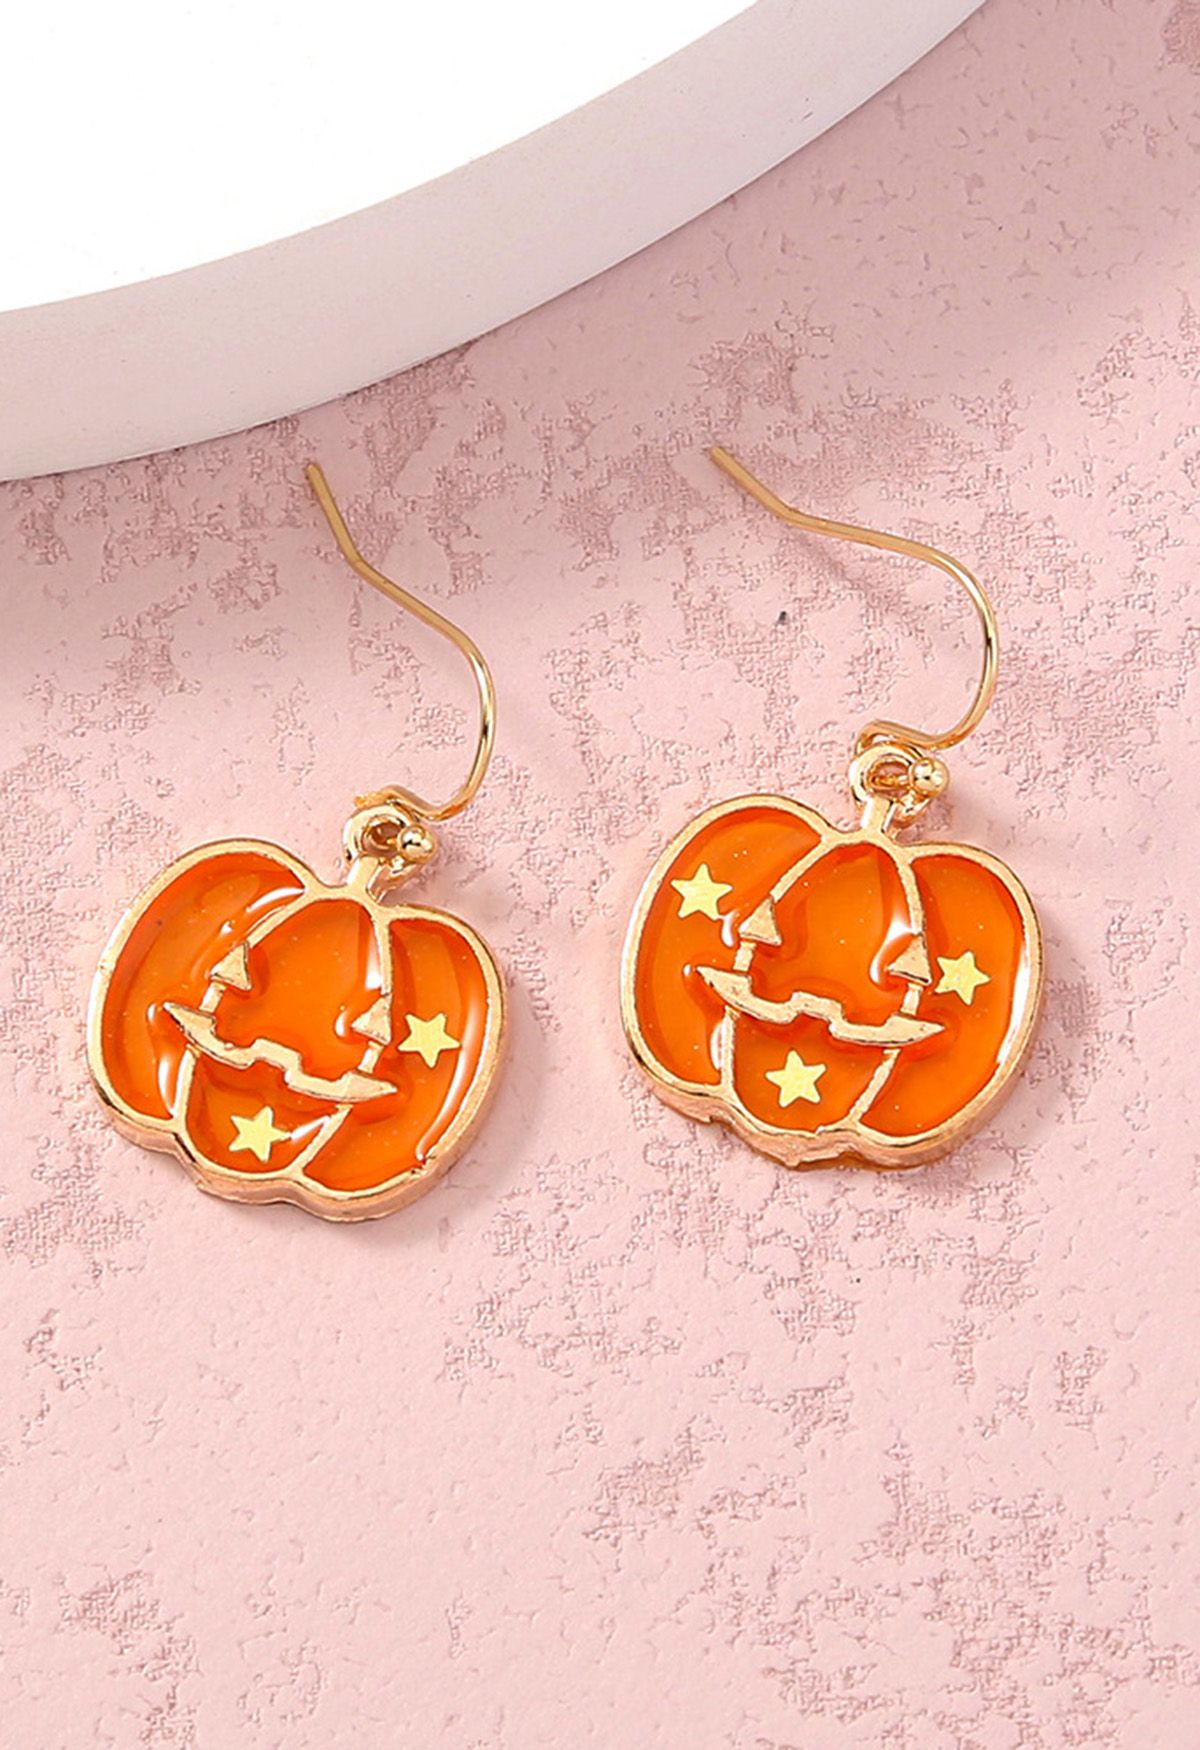 Starry Embellished Pumpkin Earrings
